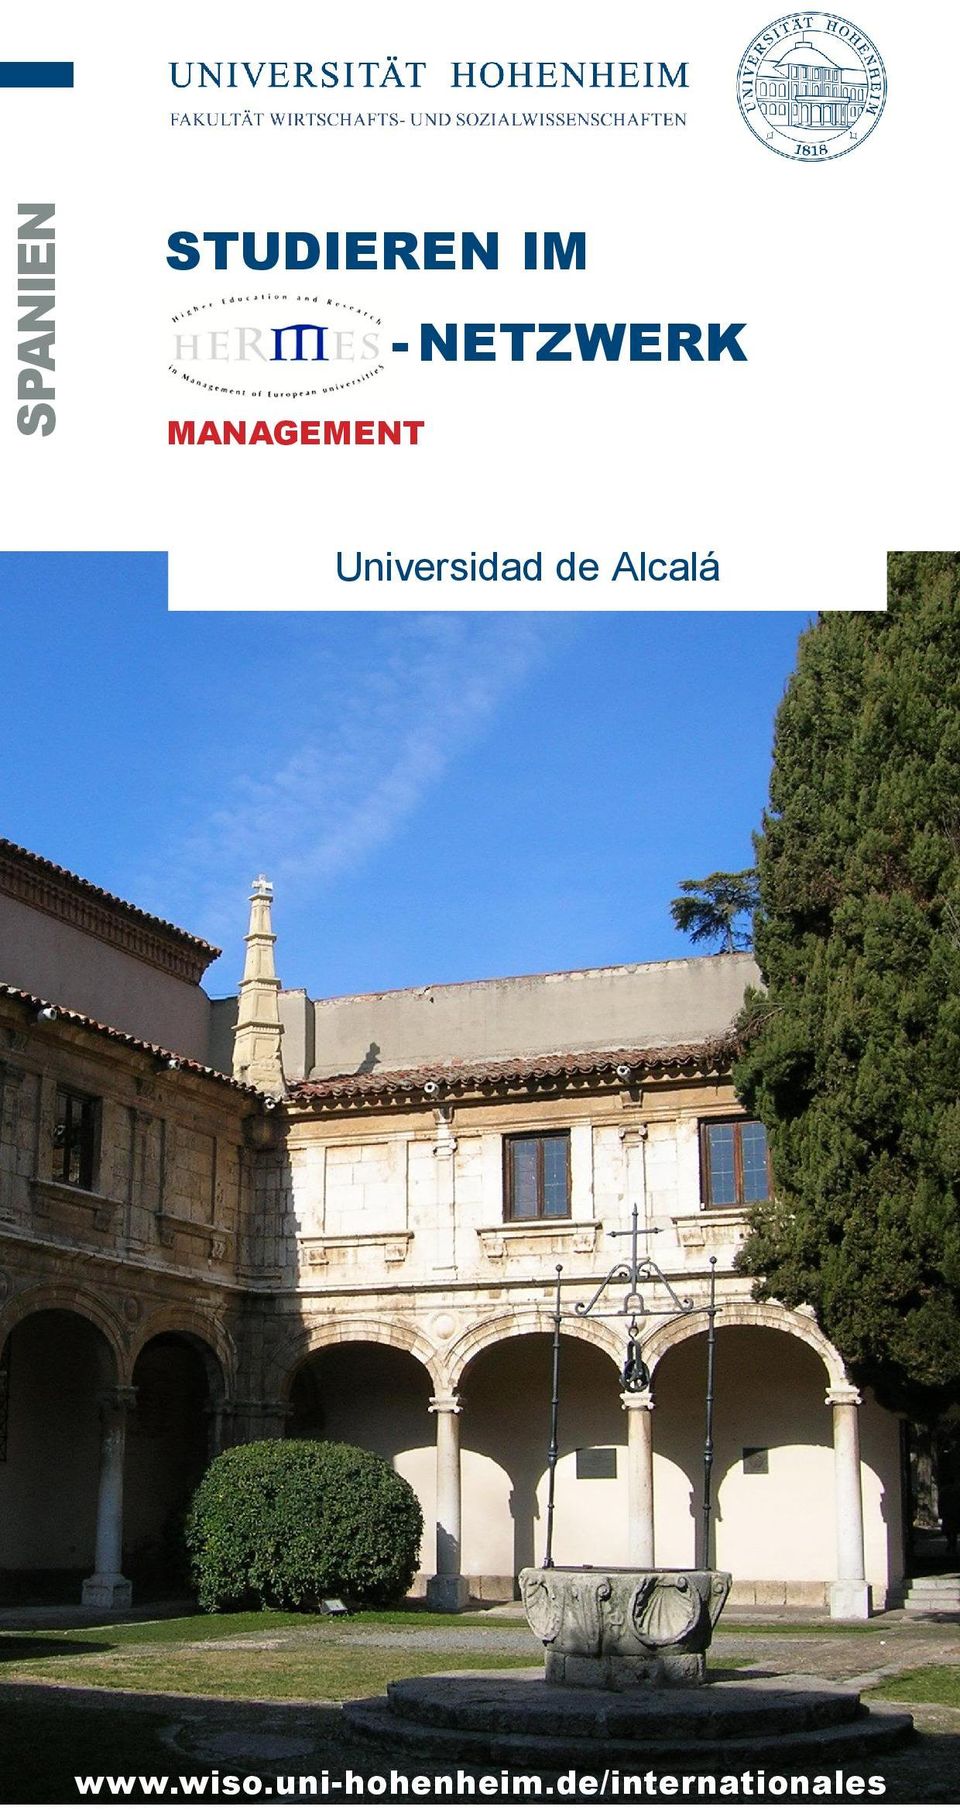 Universidad de Alcalá www.